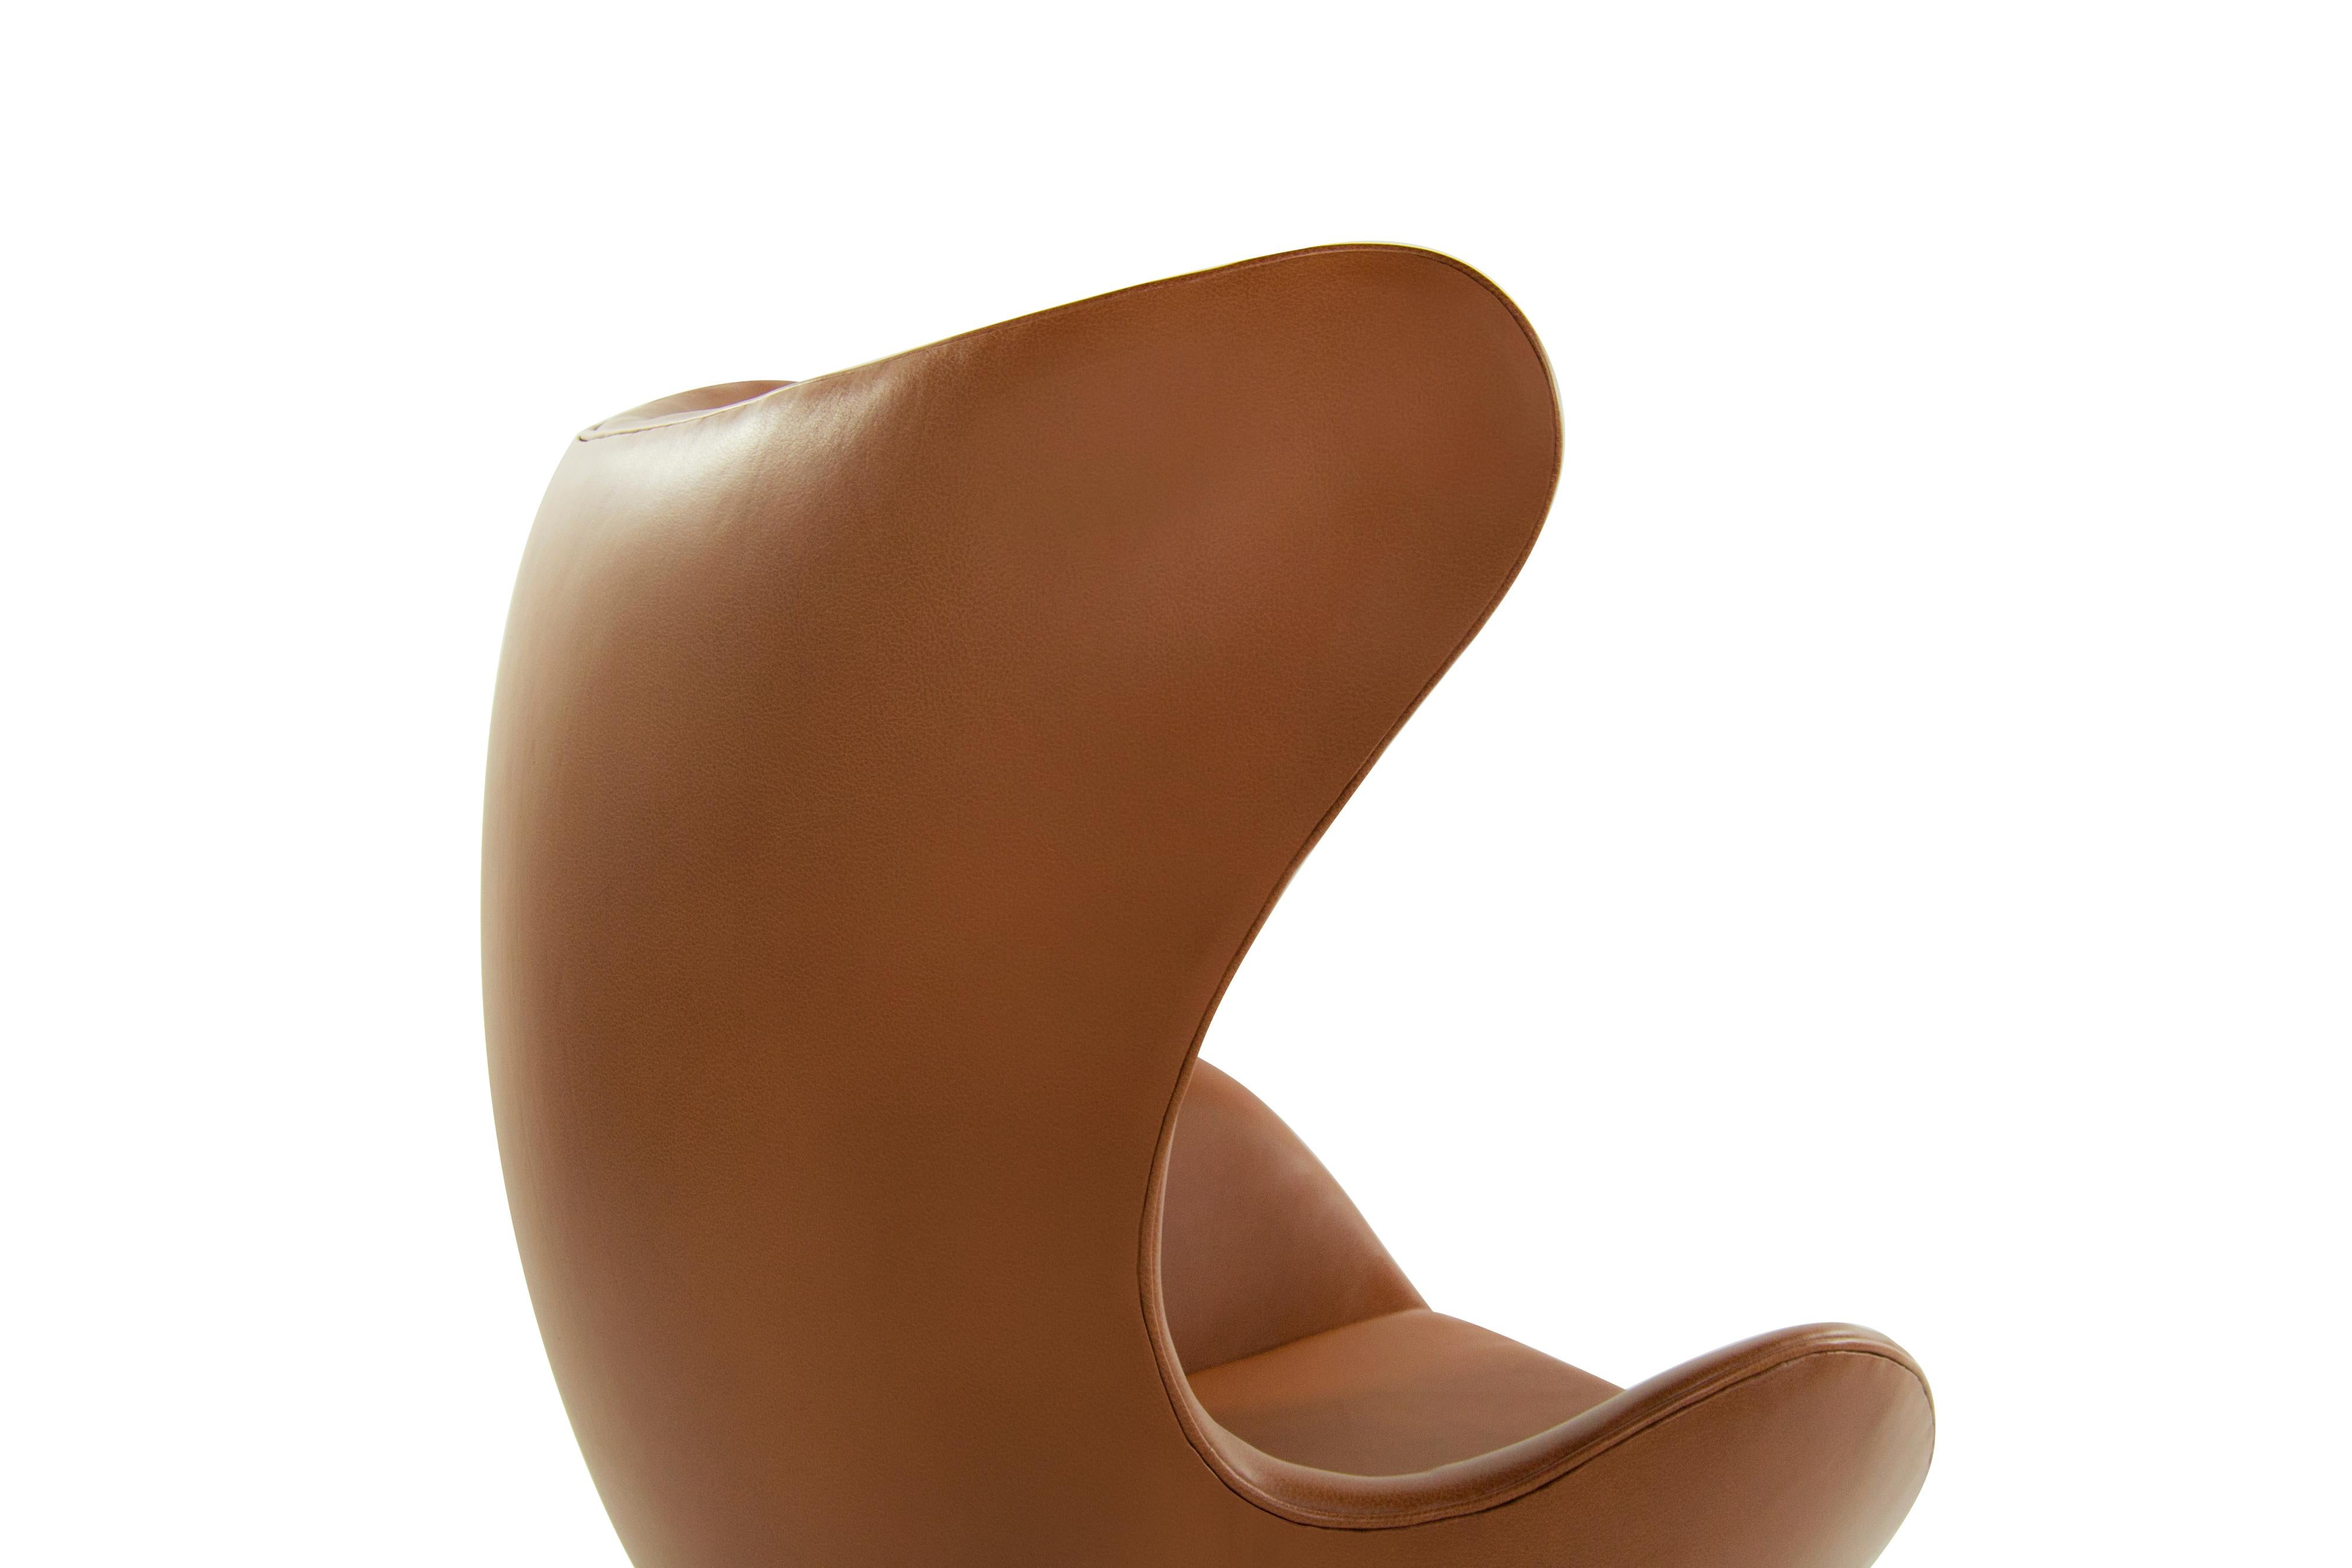 Leather Arne Jacobsen for Fritz Hansen Egg Chair, Denmark, 1966